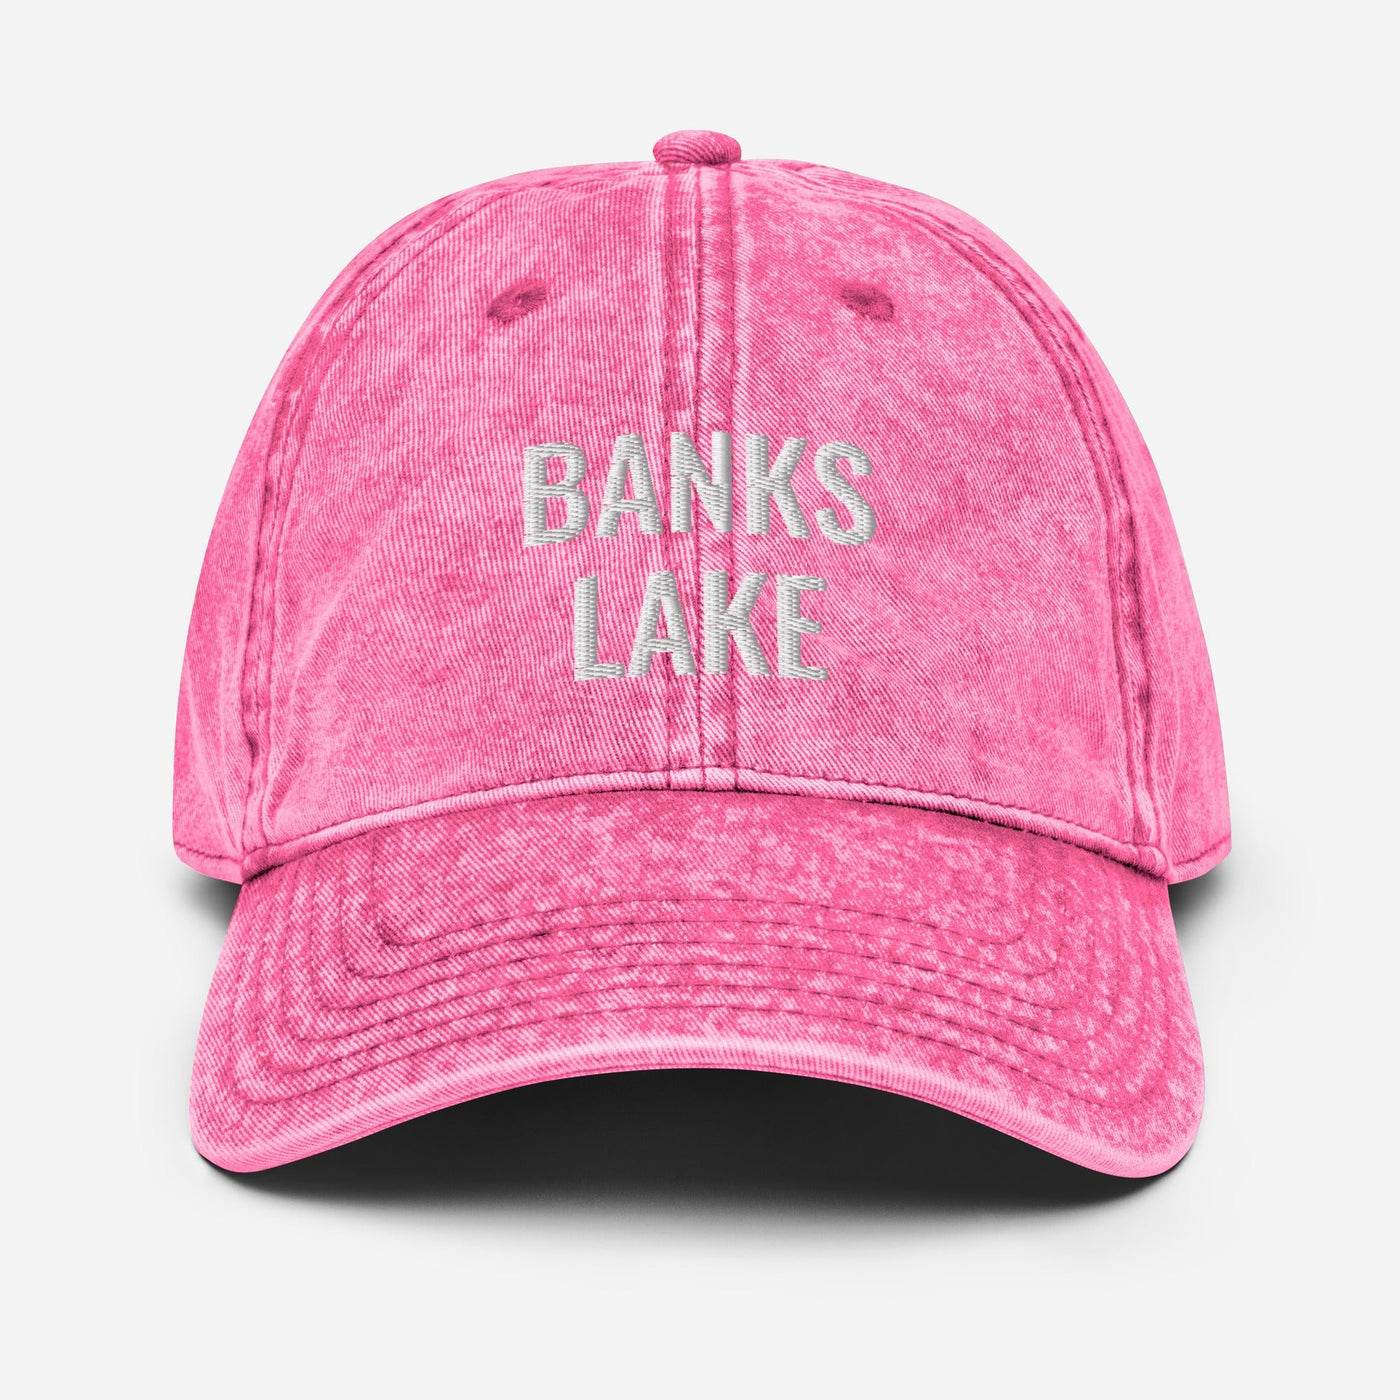 Banks Lake Hat - Ezra's Clothing